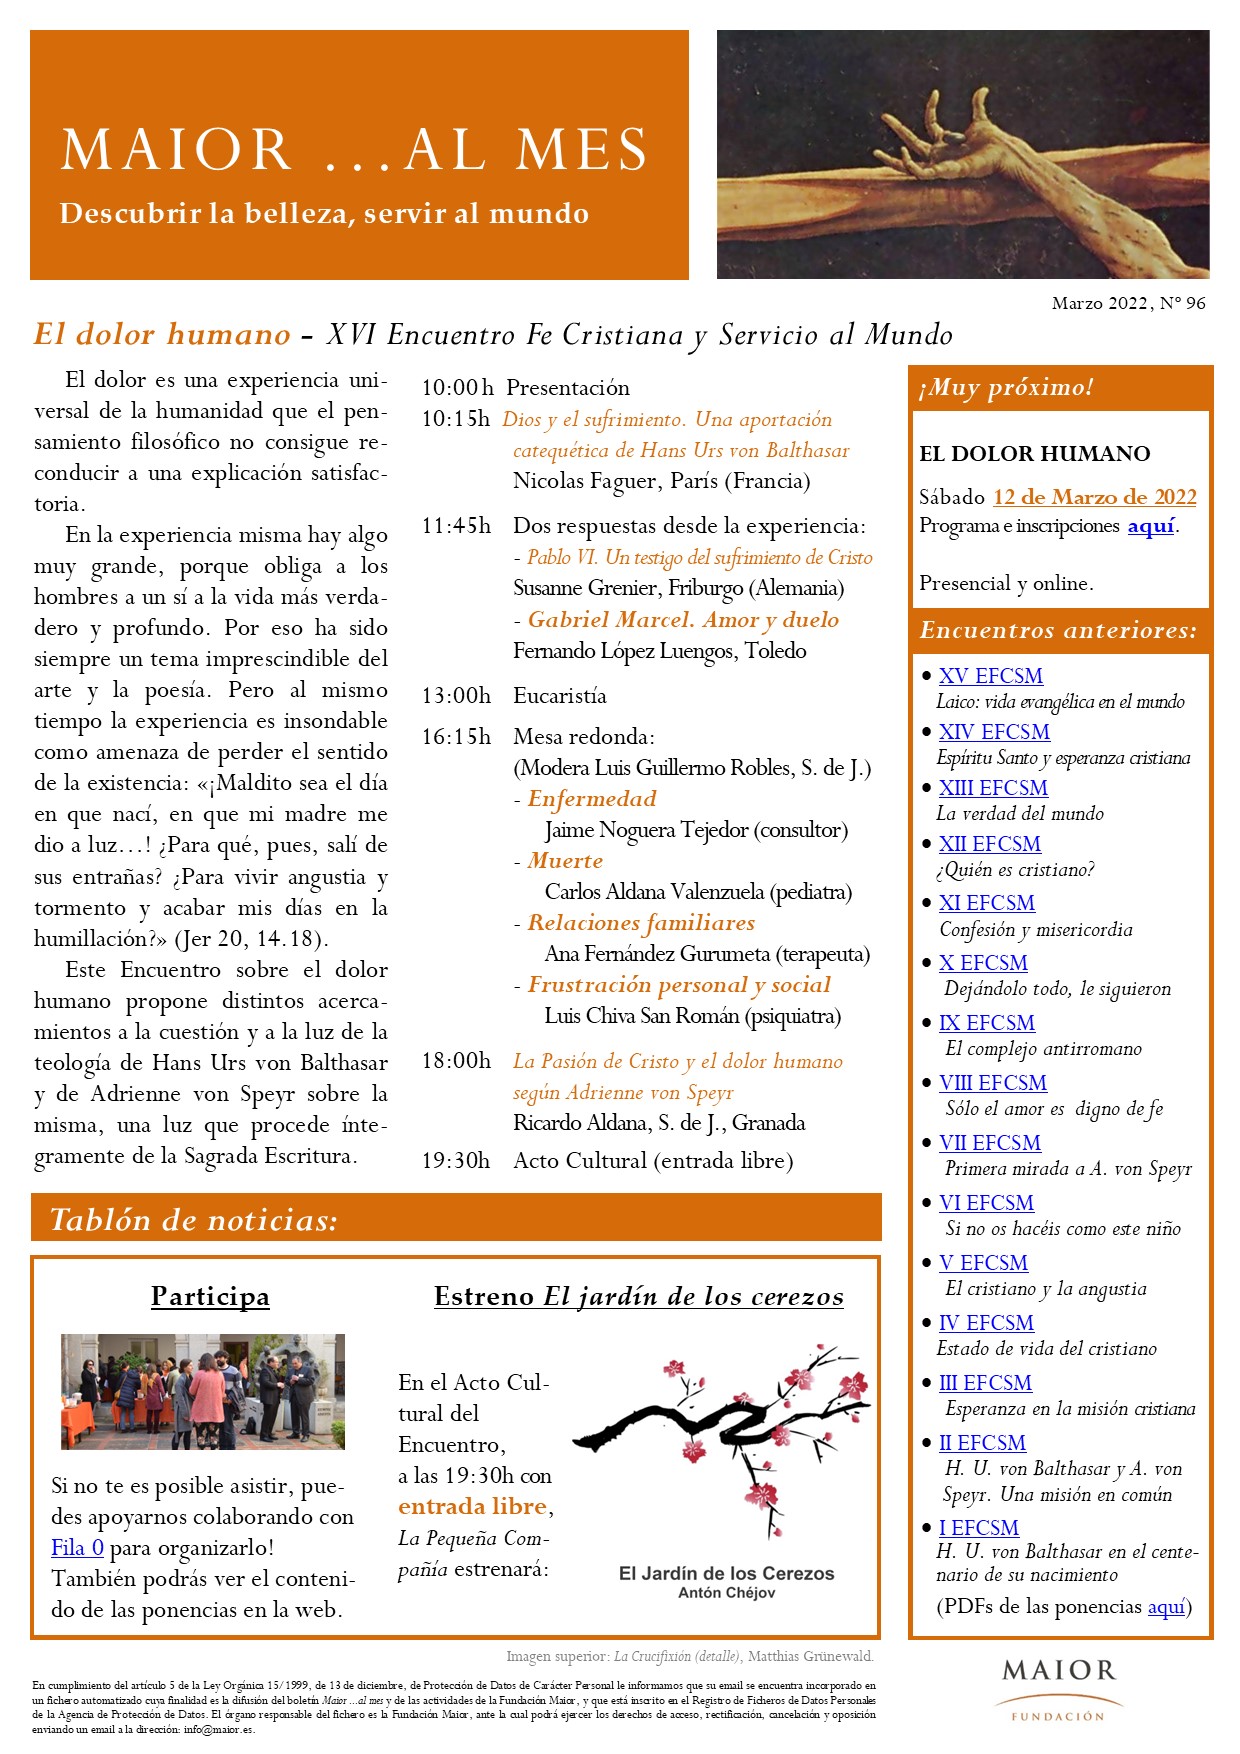 Boletín mensual de noticias y actividades de la Fundación Maior. Edición de marzo 2022